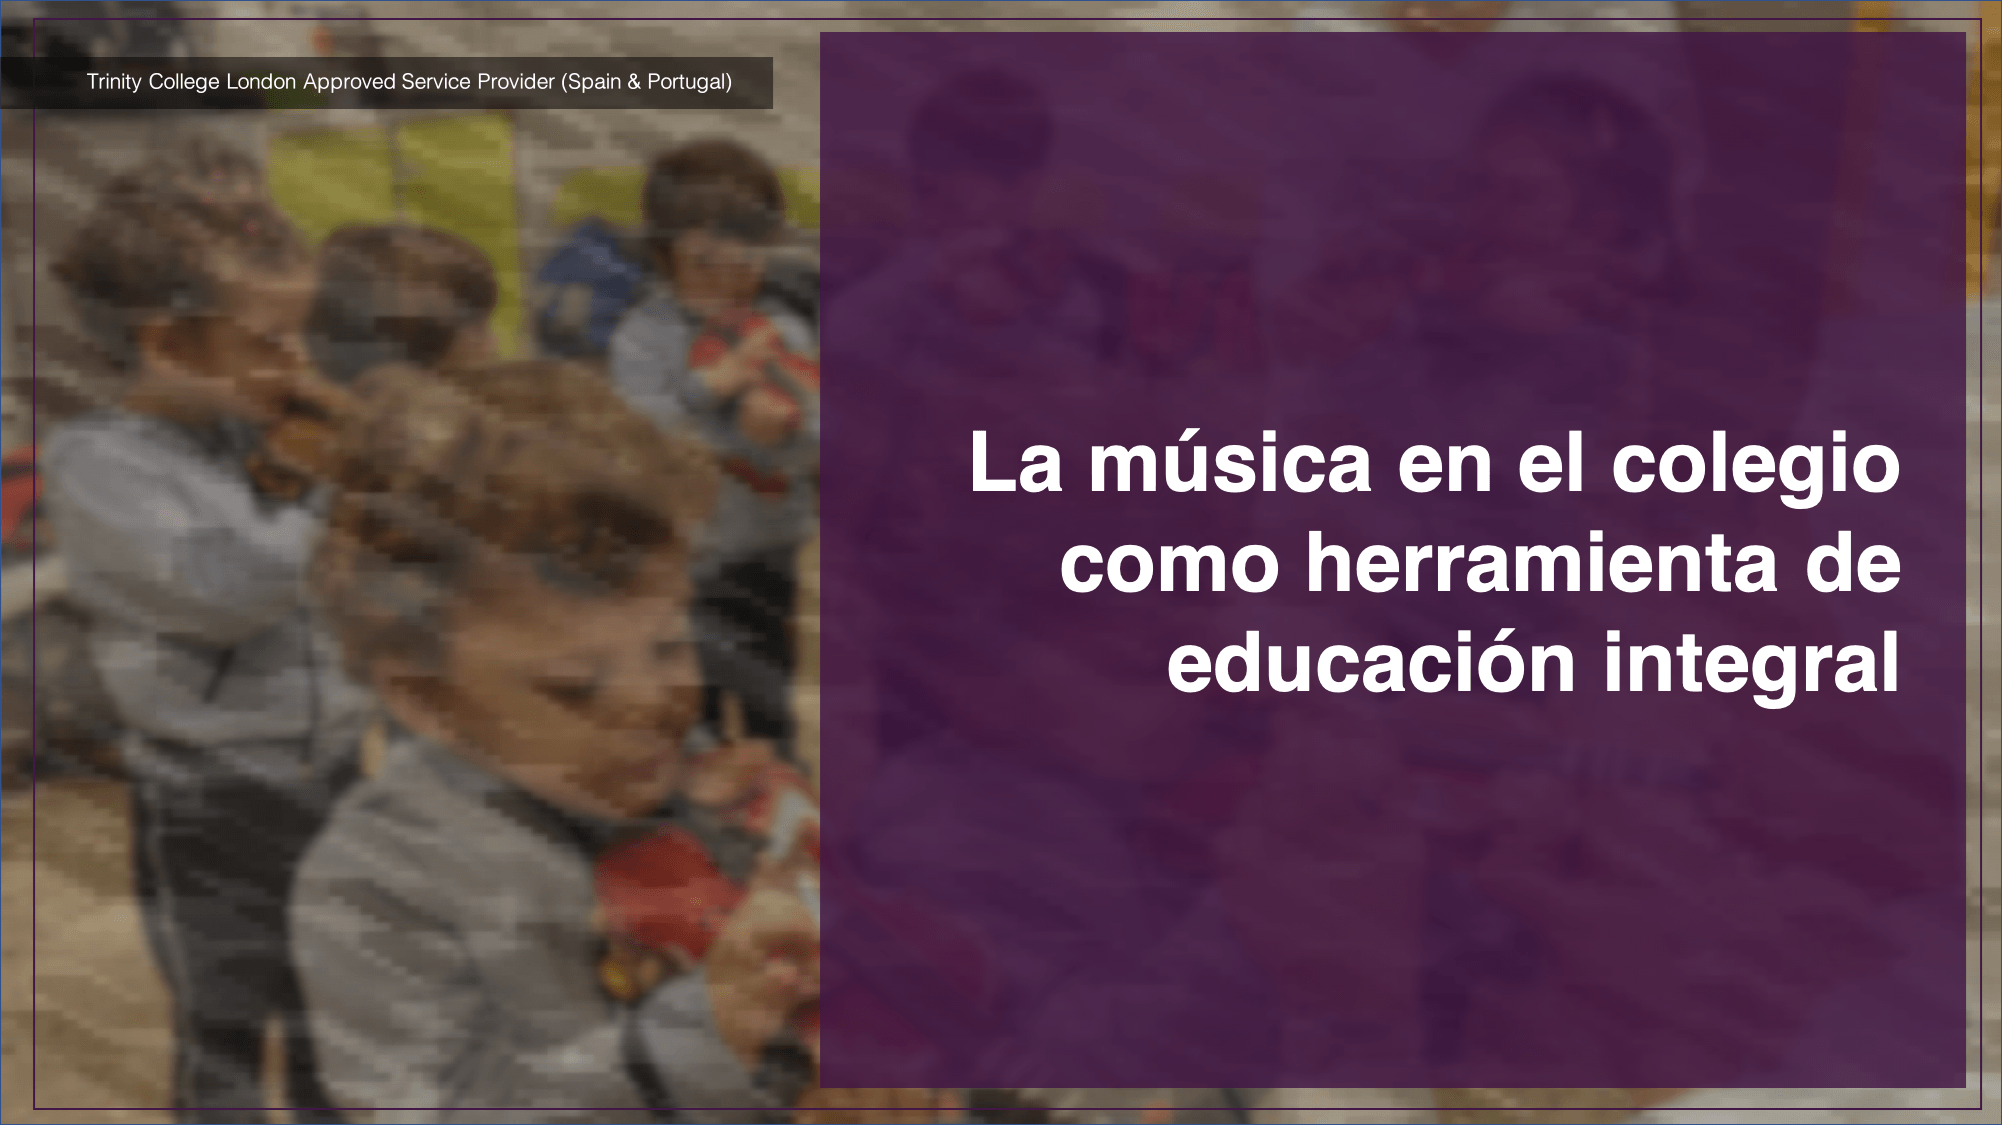 La música en el colegio como herramienta de educación integral